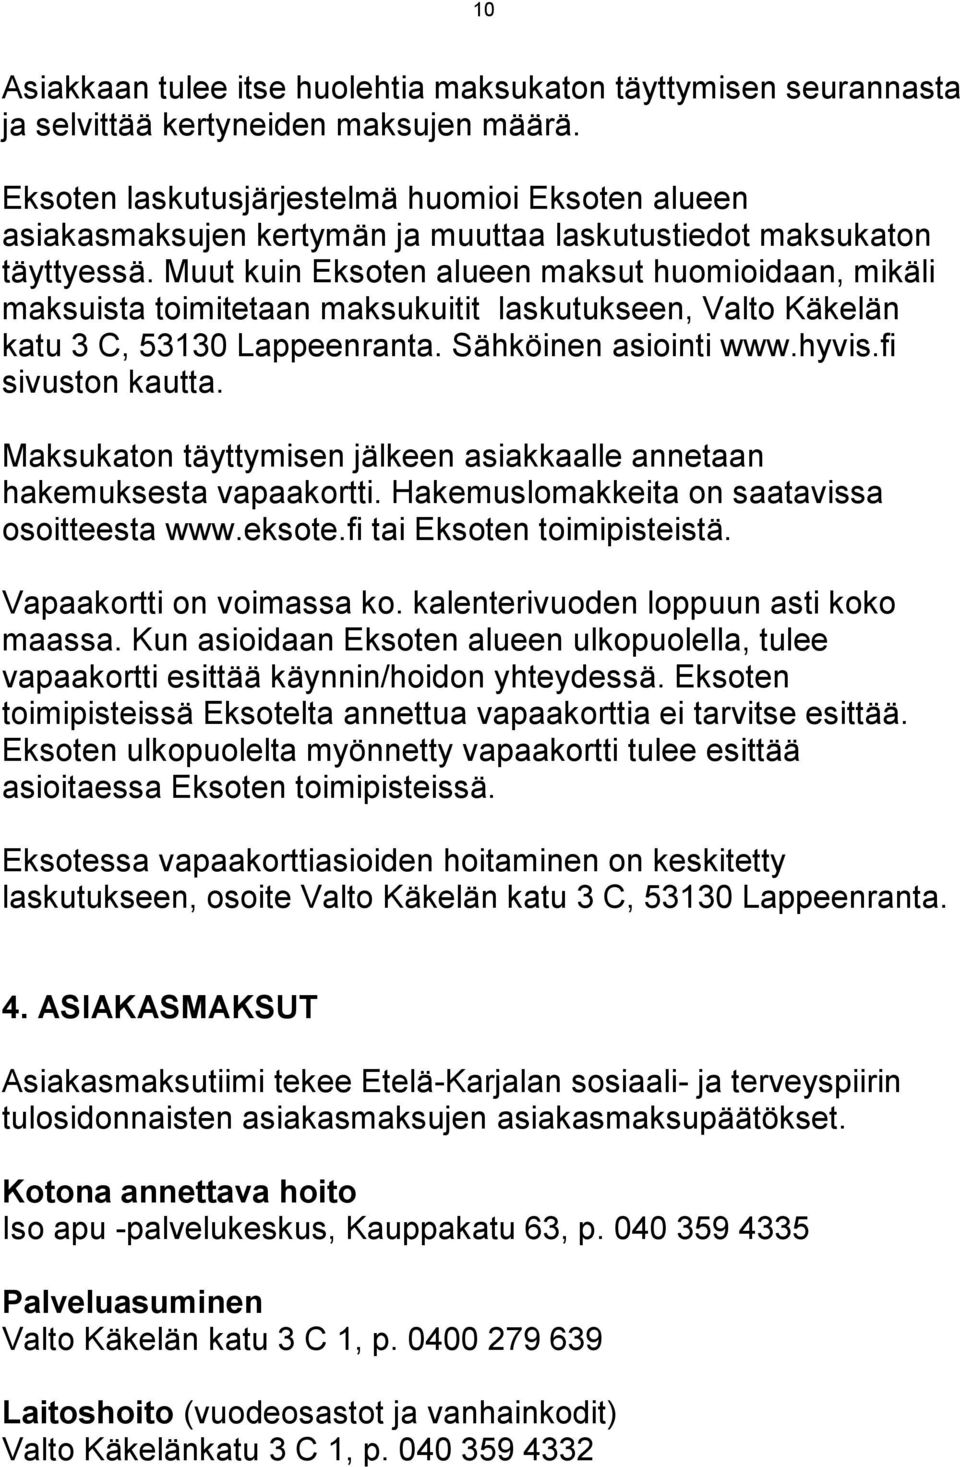 Muut kuin Eksoten alueen maksut huomioidaan, mikäli maksuista toimitetaan maksukuitit laskutukseen, Valto Käkelän katu 3 C, 53130 Lappeenranta. Sähköinen asiointi www.hyvis.fi sivuston kautta.